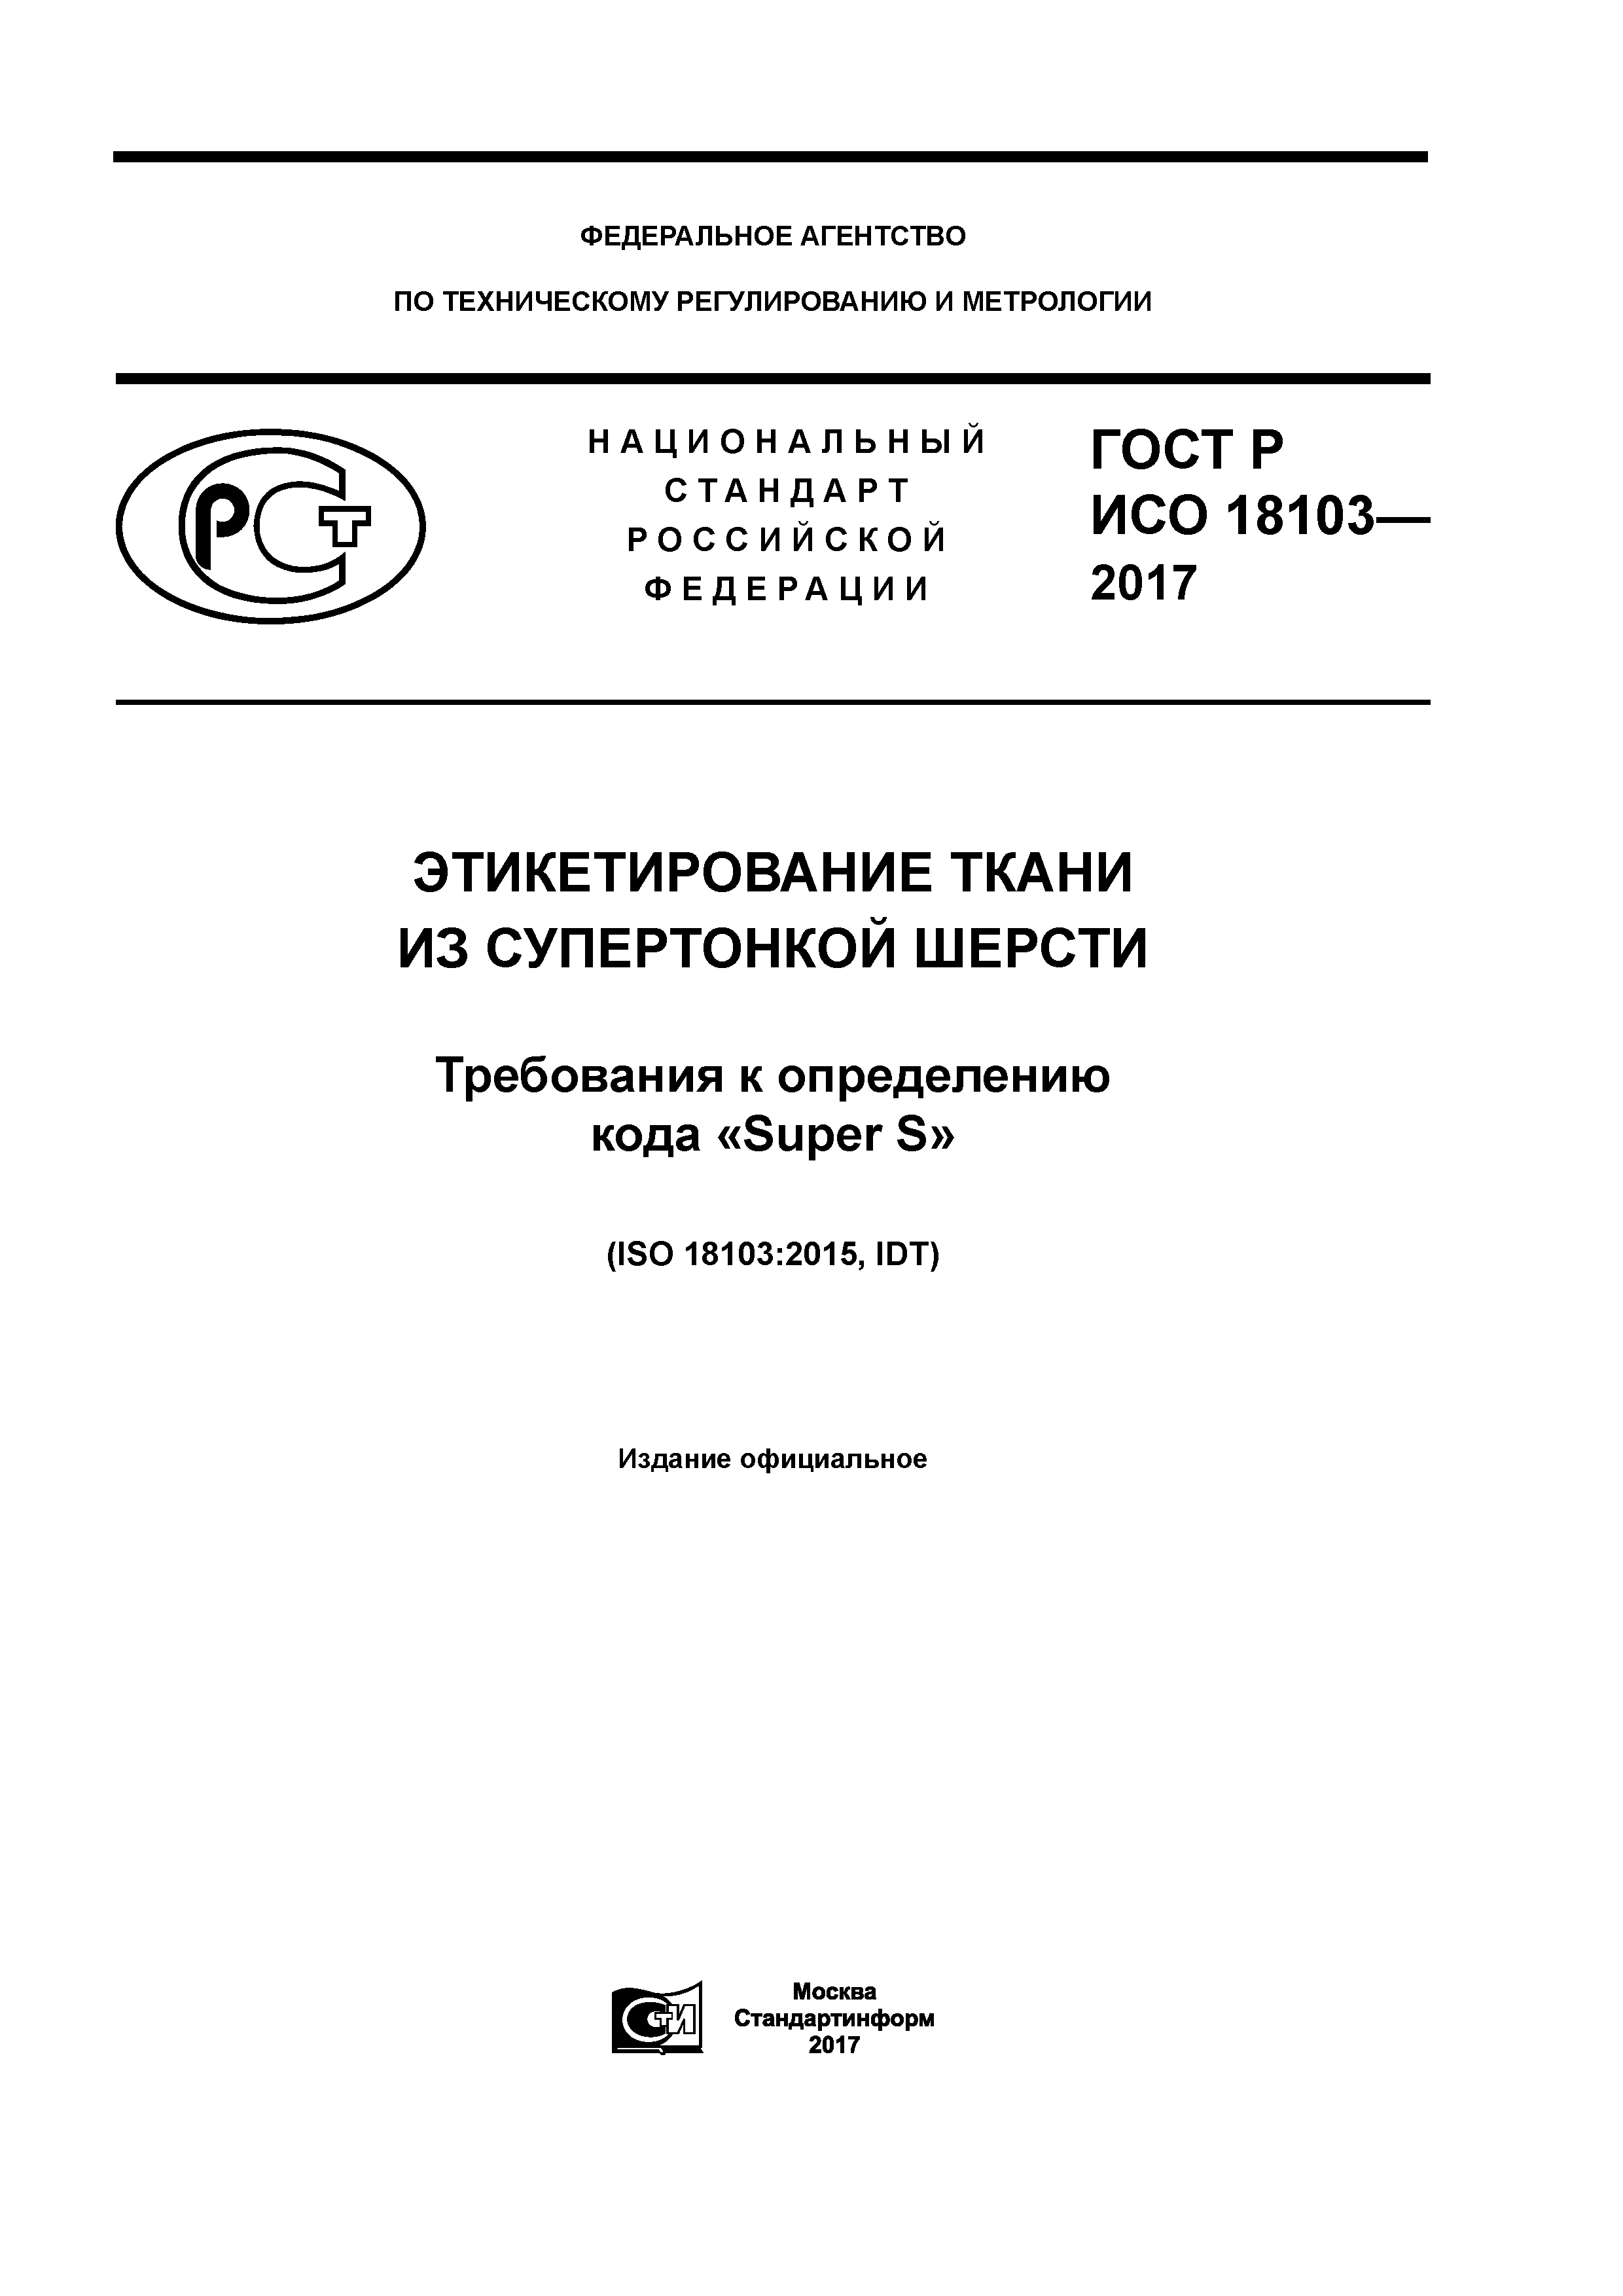 ГОСТ Р ИСО 18103-2017